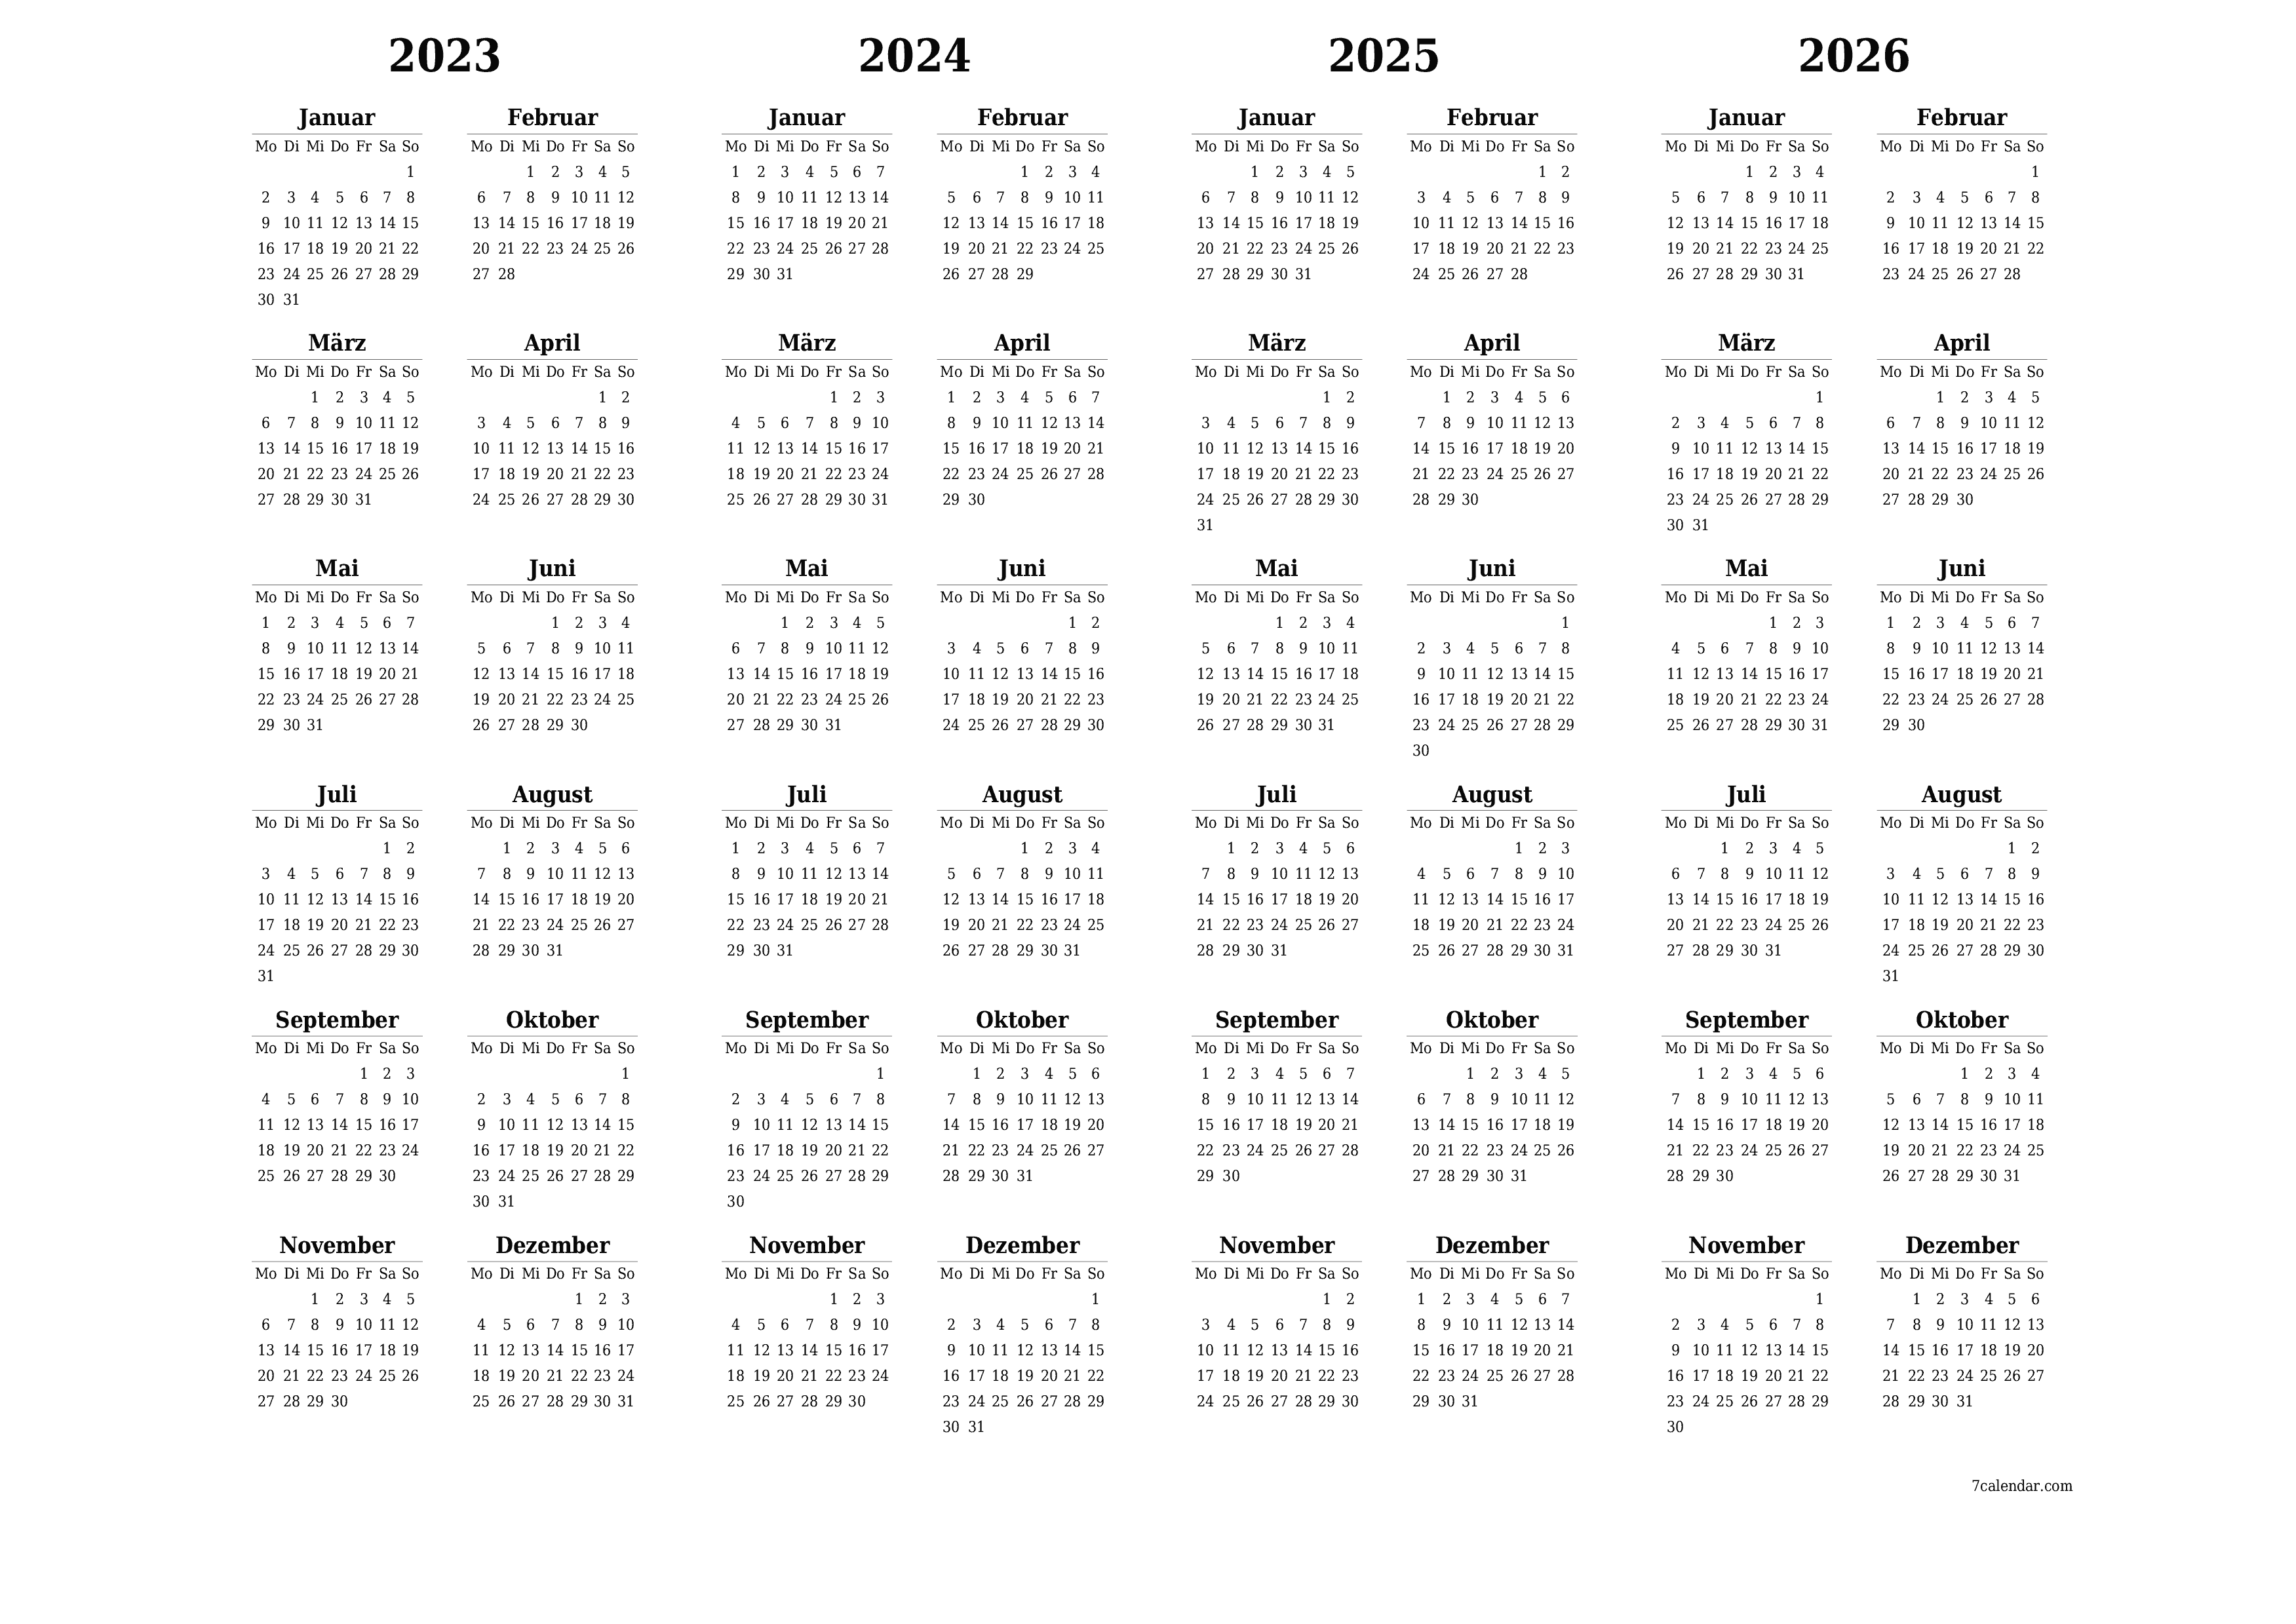 Jahresplanerkalender für das Jahr 2023, 2024, 2025, 2026 mit Notizen leeren, speichern und als PDF PNG German - 7calendar.com drucken